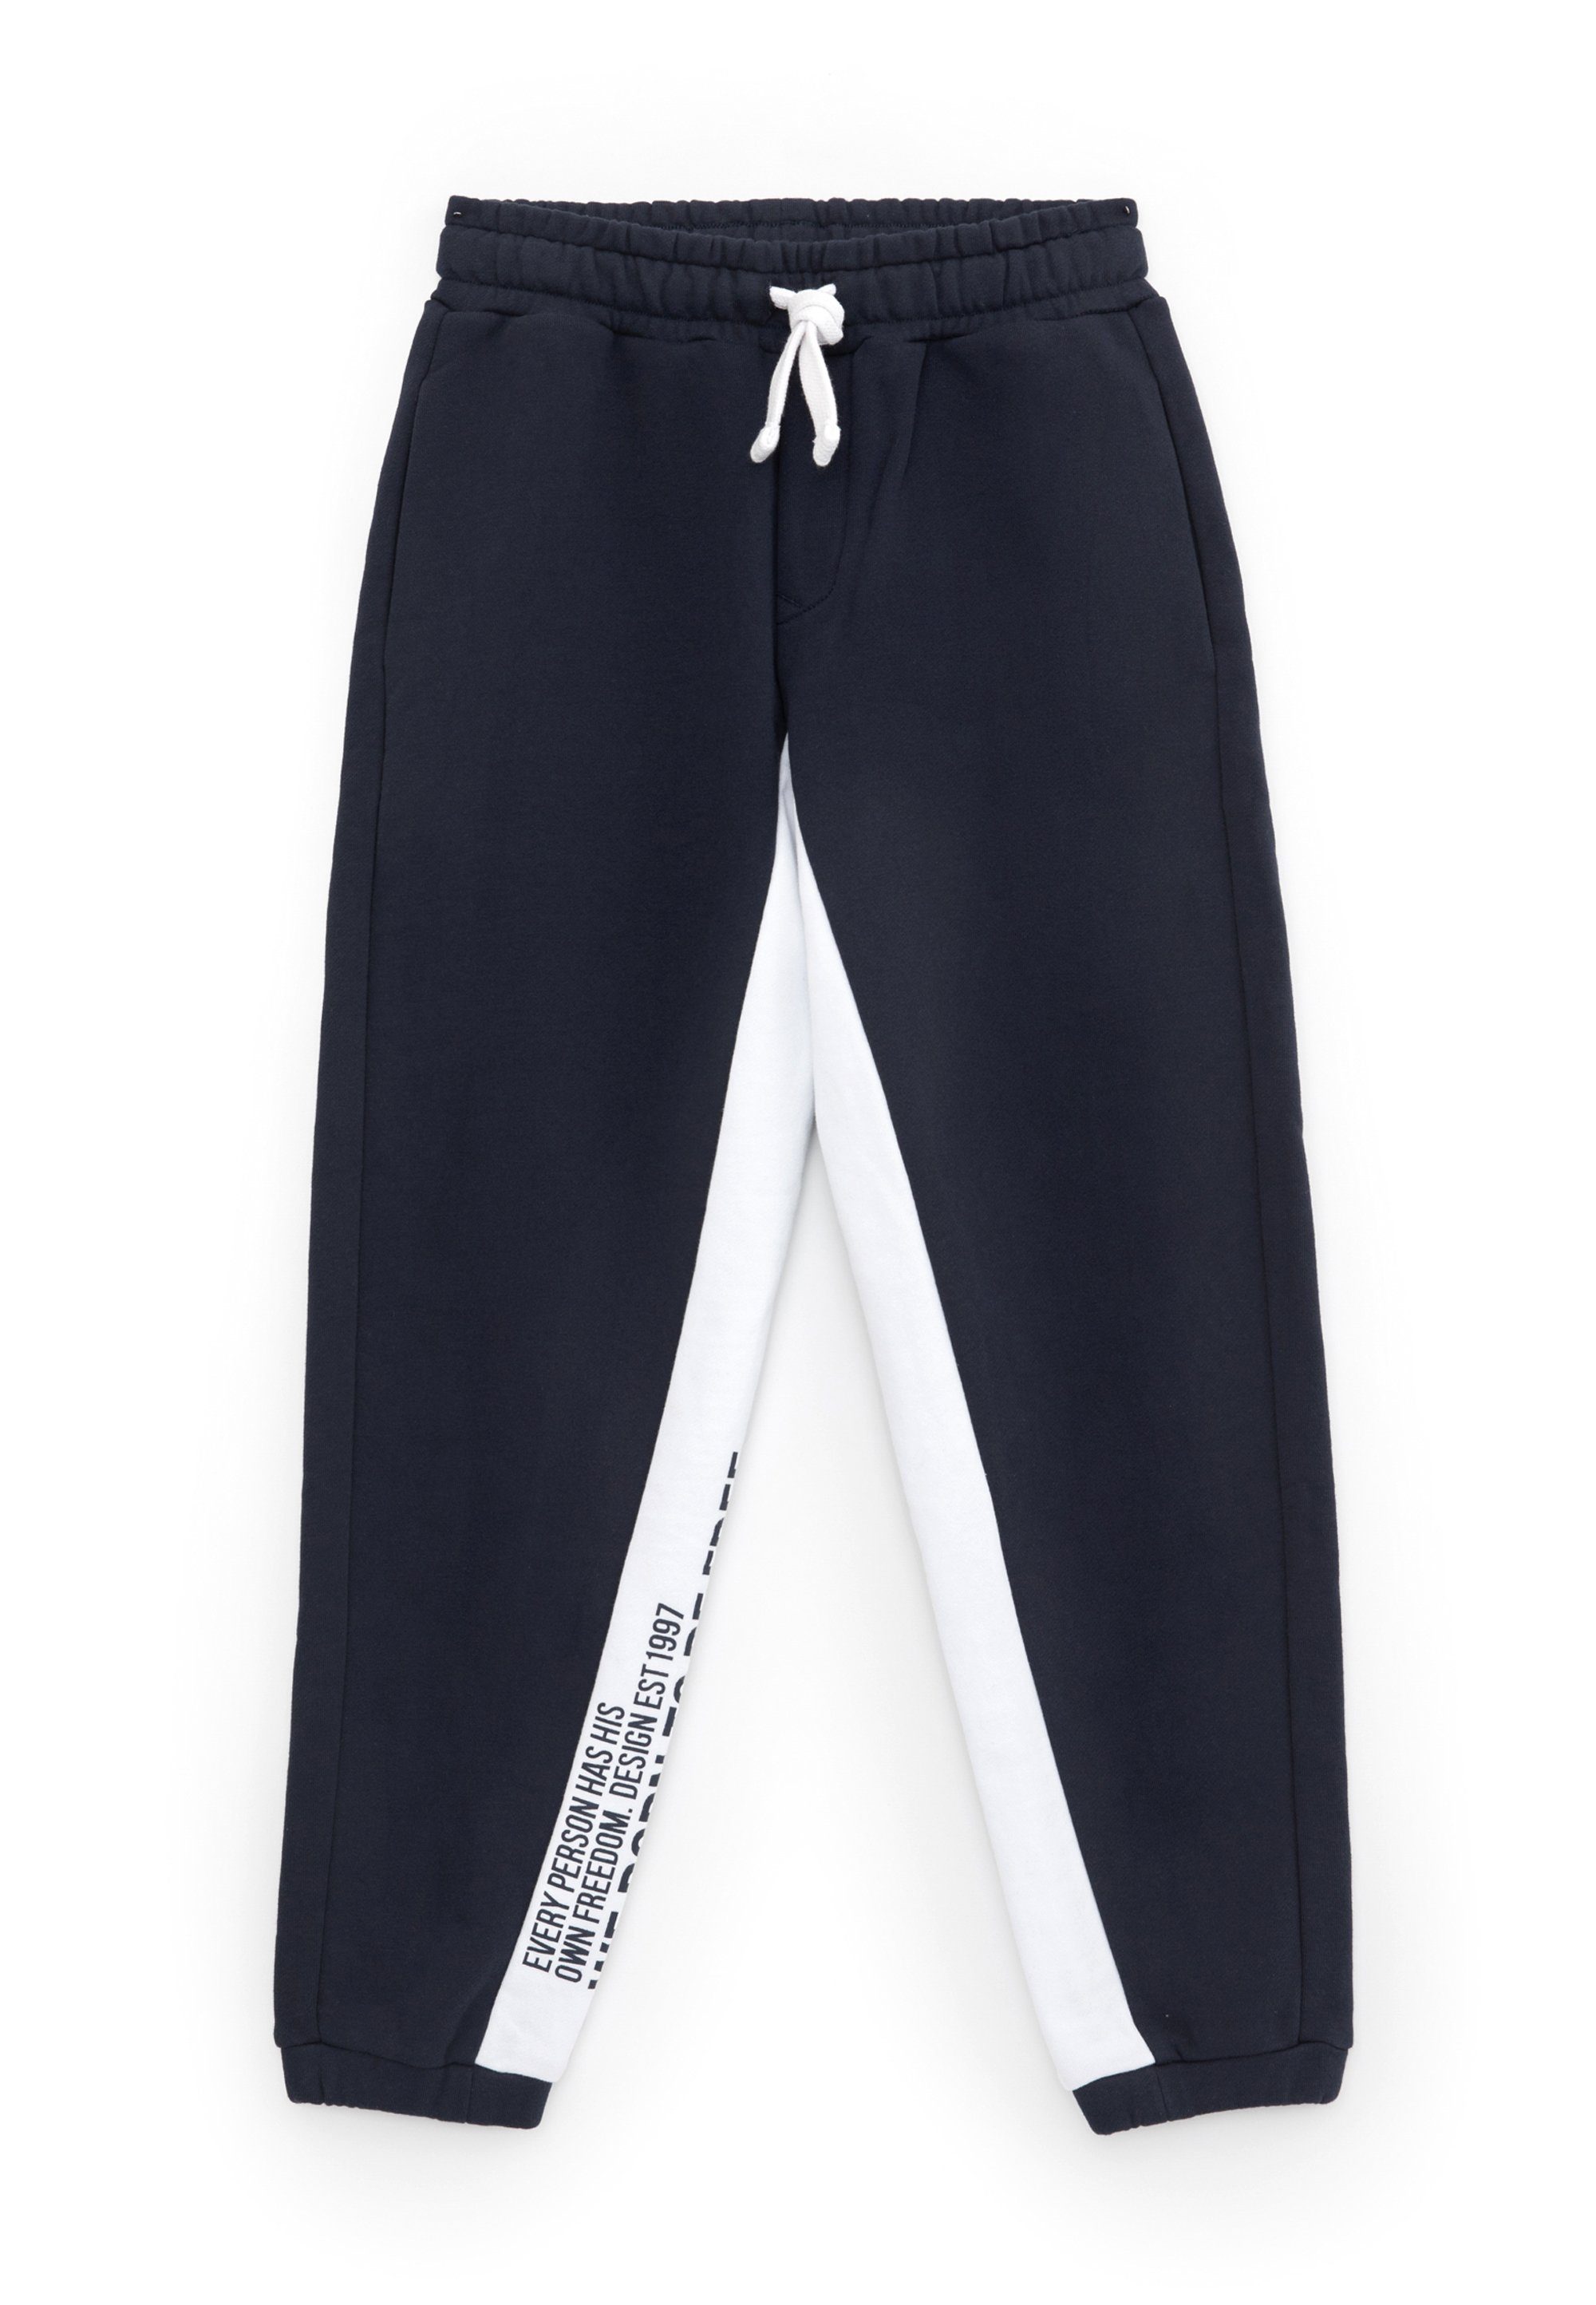 Gulliver Sweathose mit seitlichen Streifen, Vielseitig tragbar zu  alltäglichen und sportlichen Outfits